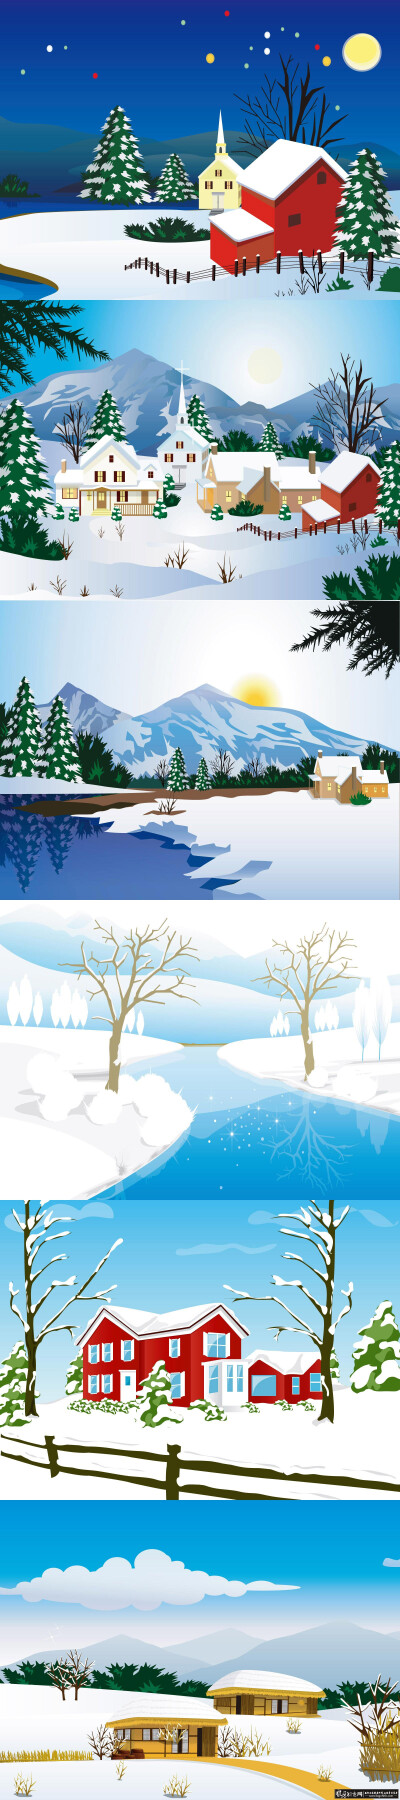 插画/手绘 手绘圣诞冬日雪景欣赏,手绘创意风景画欣赏,手绘创意作品